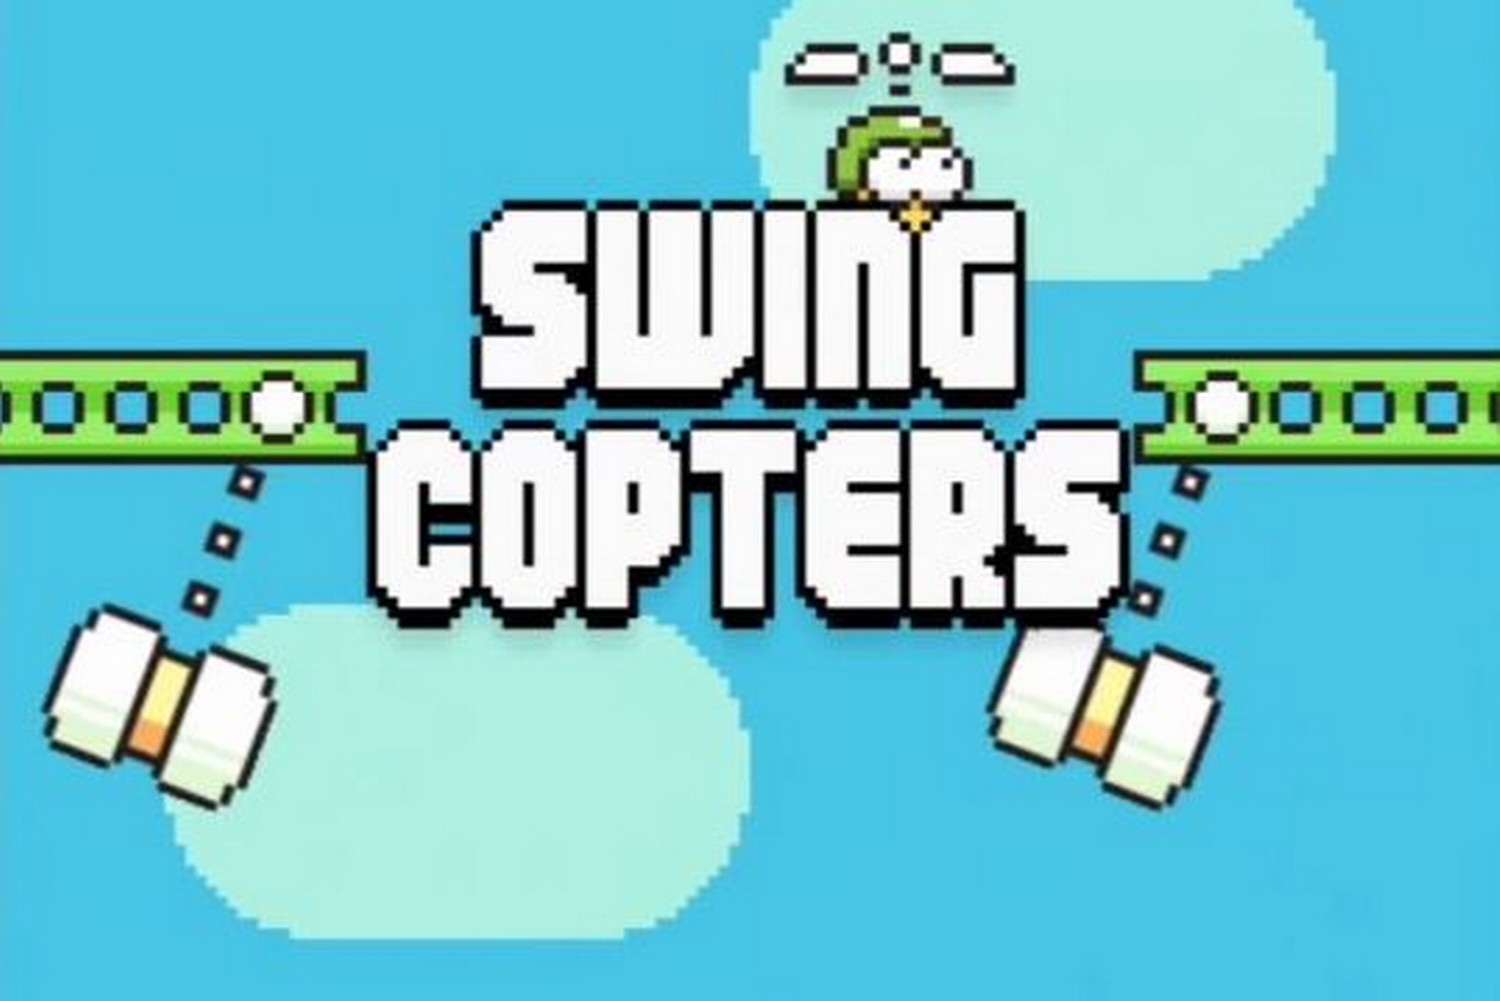 Swing+Copters - Cut the rope - cho chú ếch xanh ăn kẹo